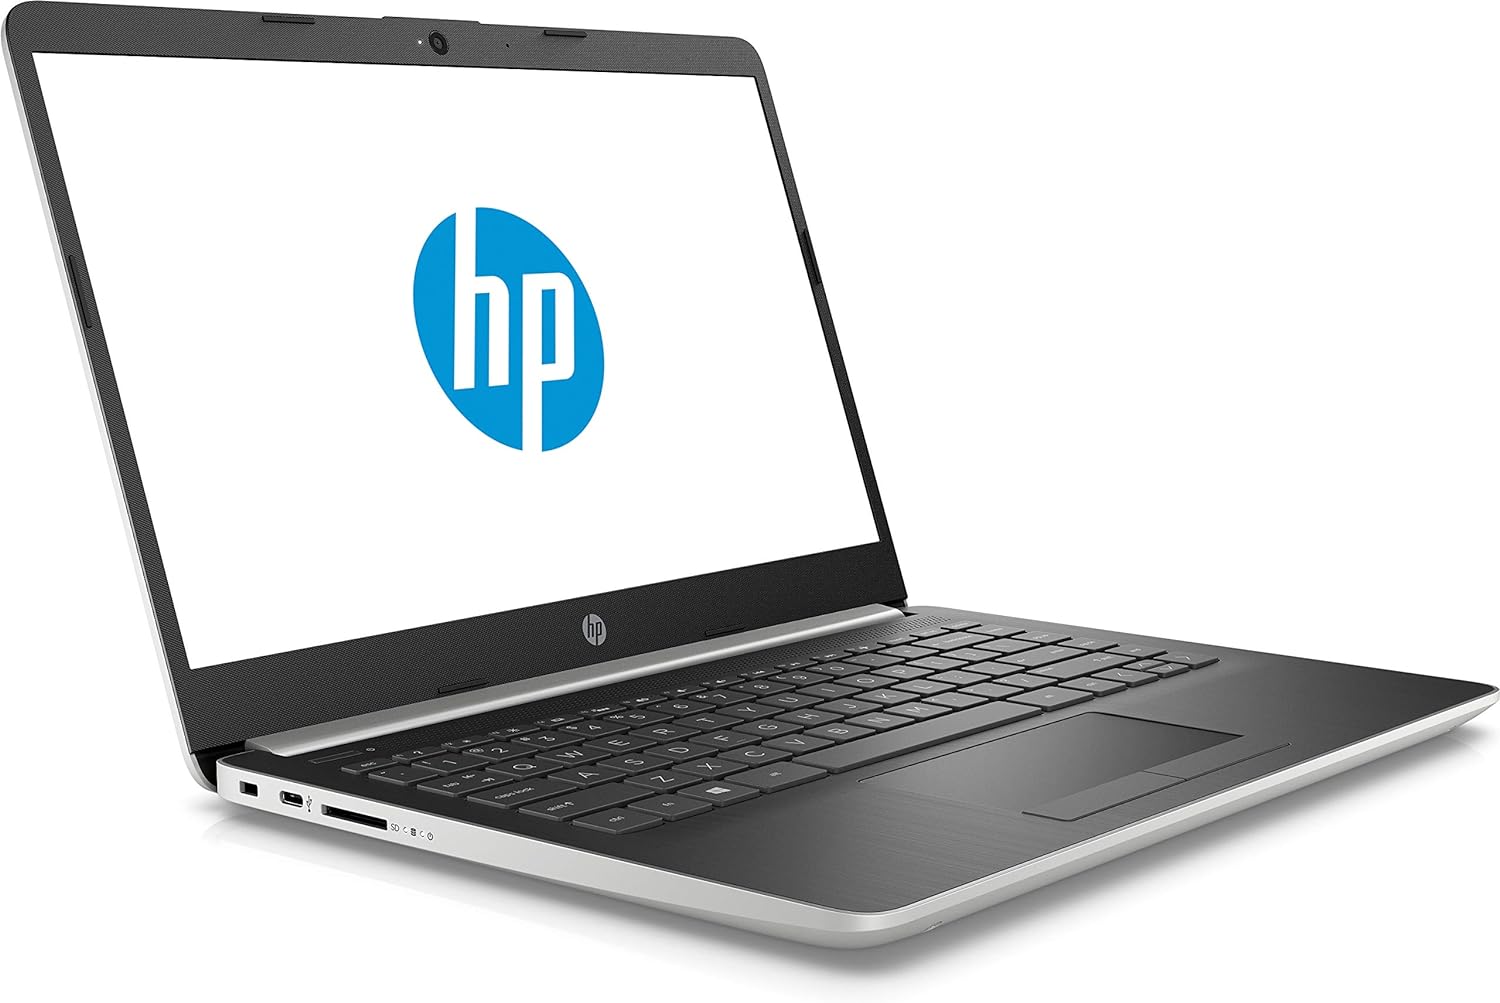 HP 15-DY1051WM Notebook 15.6" HD i5-1035G1 1GHz 8 GB RAM 256 GB SSD Win 10 Home Natural Silver